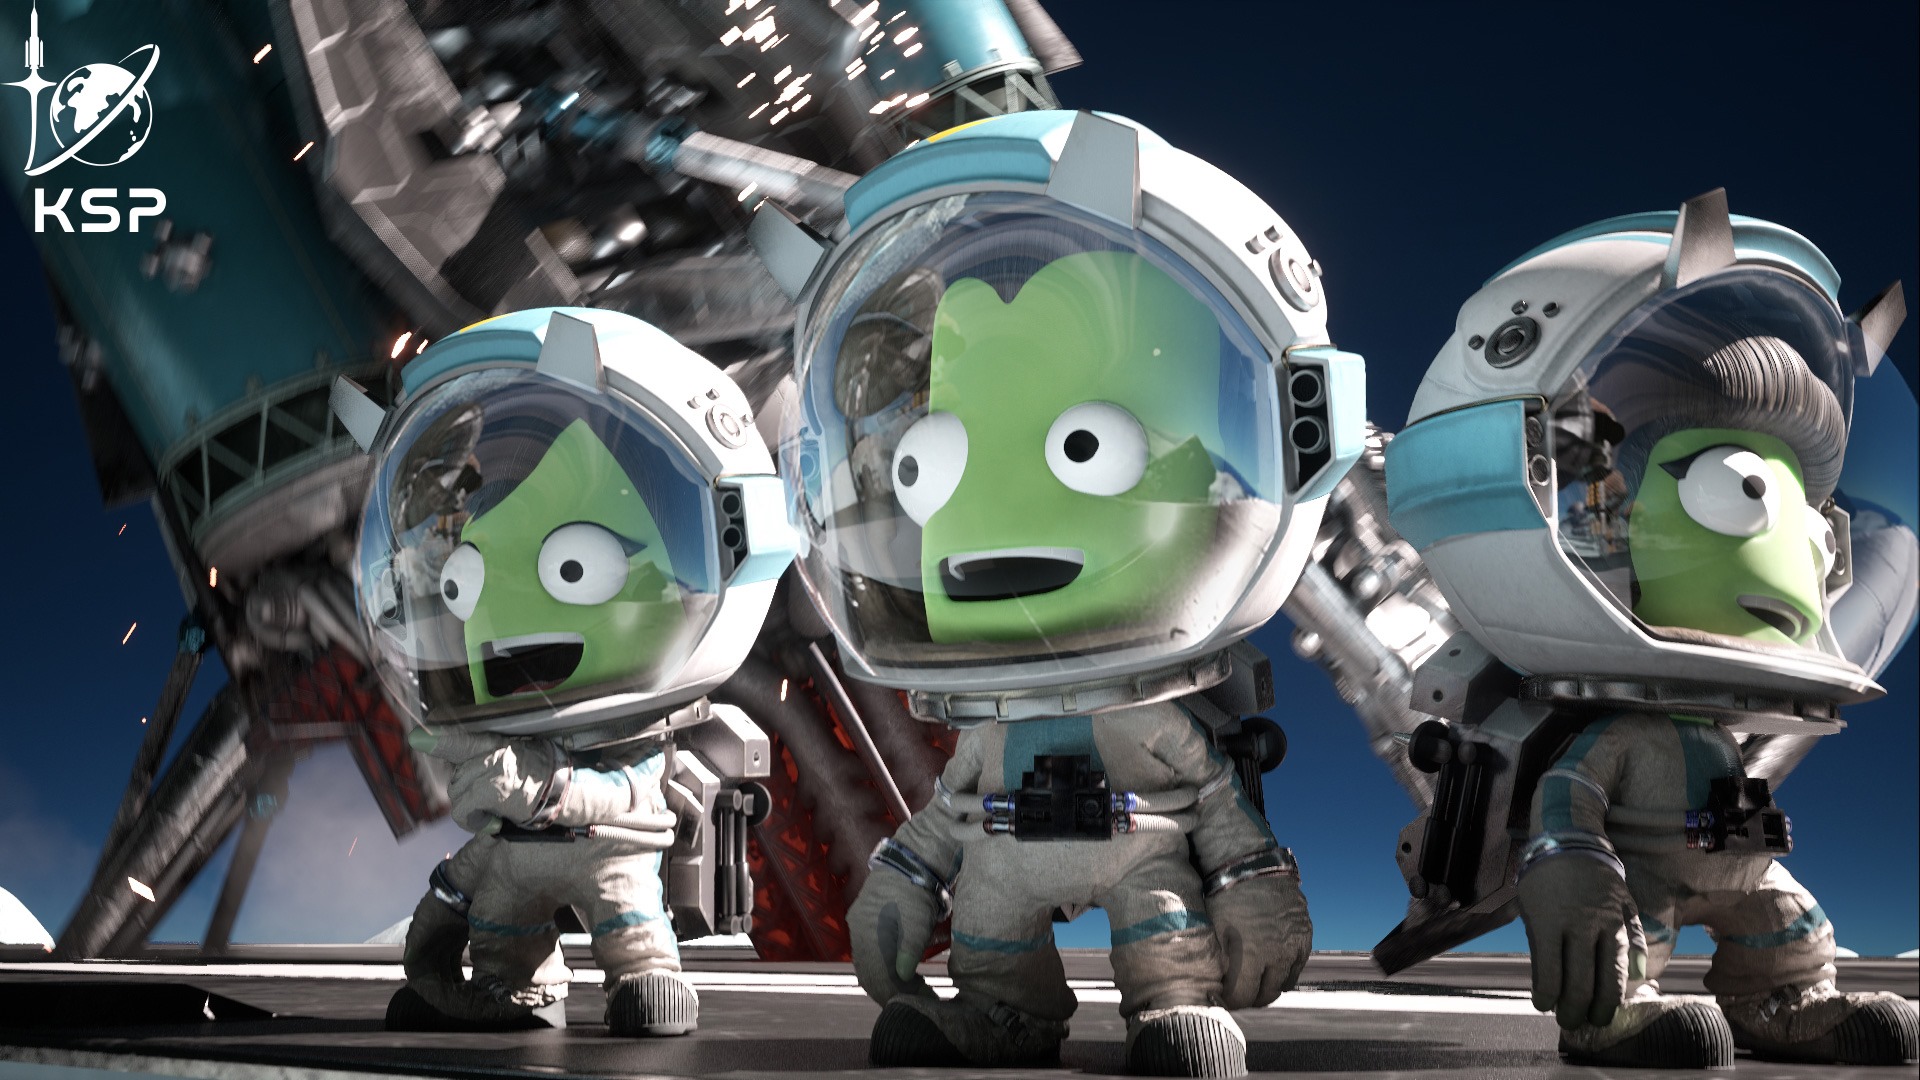 Drei kleine grüne Aliens im Raumanzug aus dem Weltraumsimulations-Spiel Kerbal Space Program